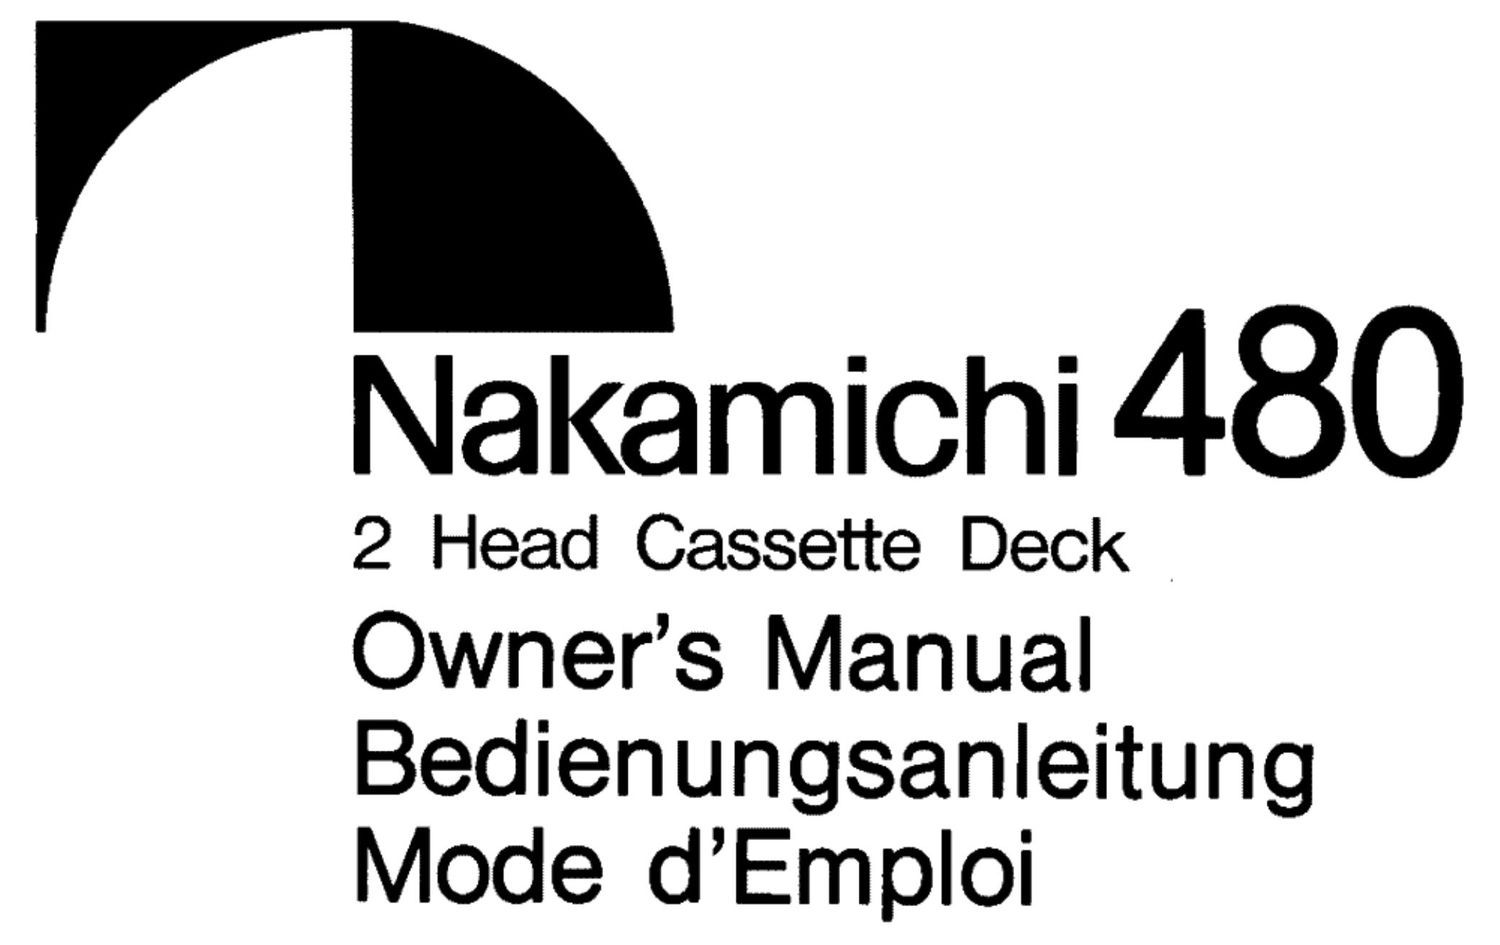 Nakamichi 480 Owners Manual